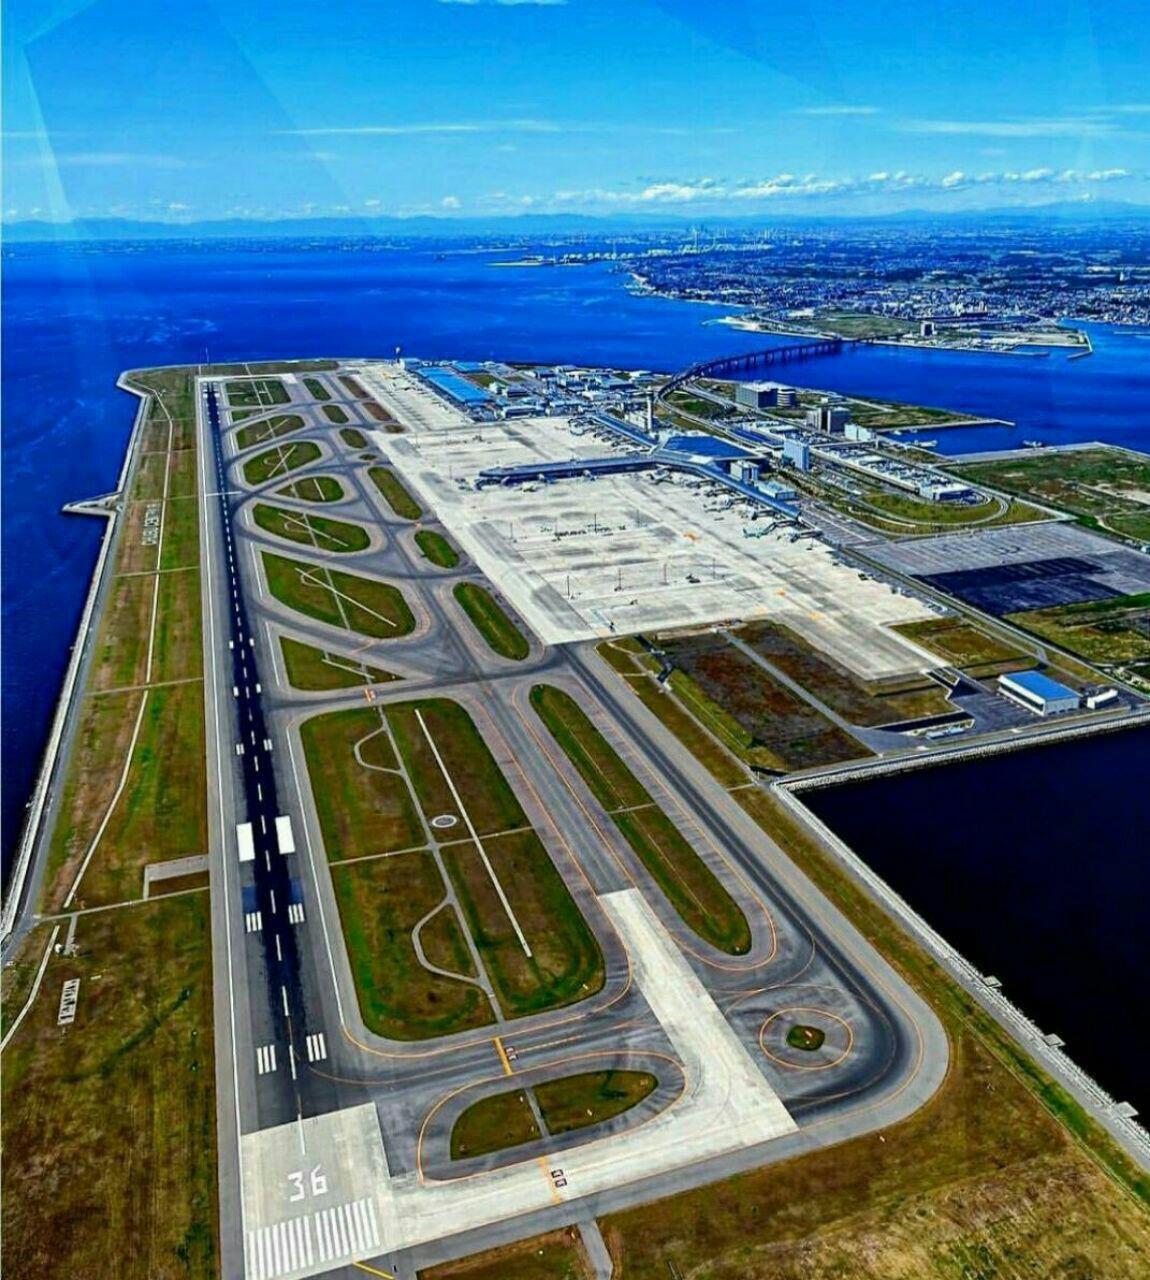 فرودگاه بین المللی ژاپن روی جزیره مصنوعی